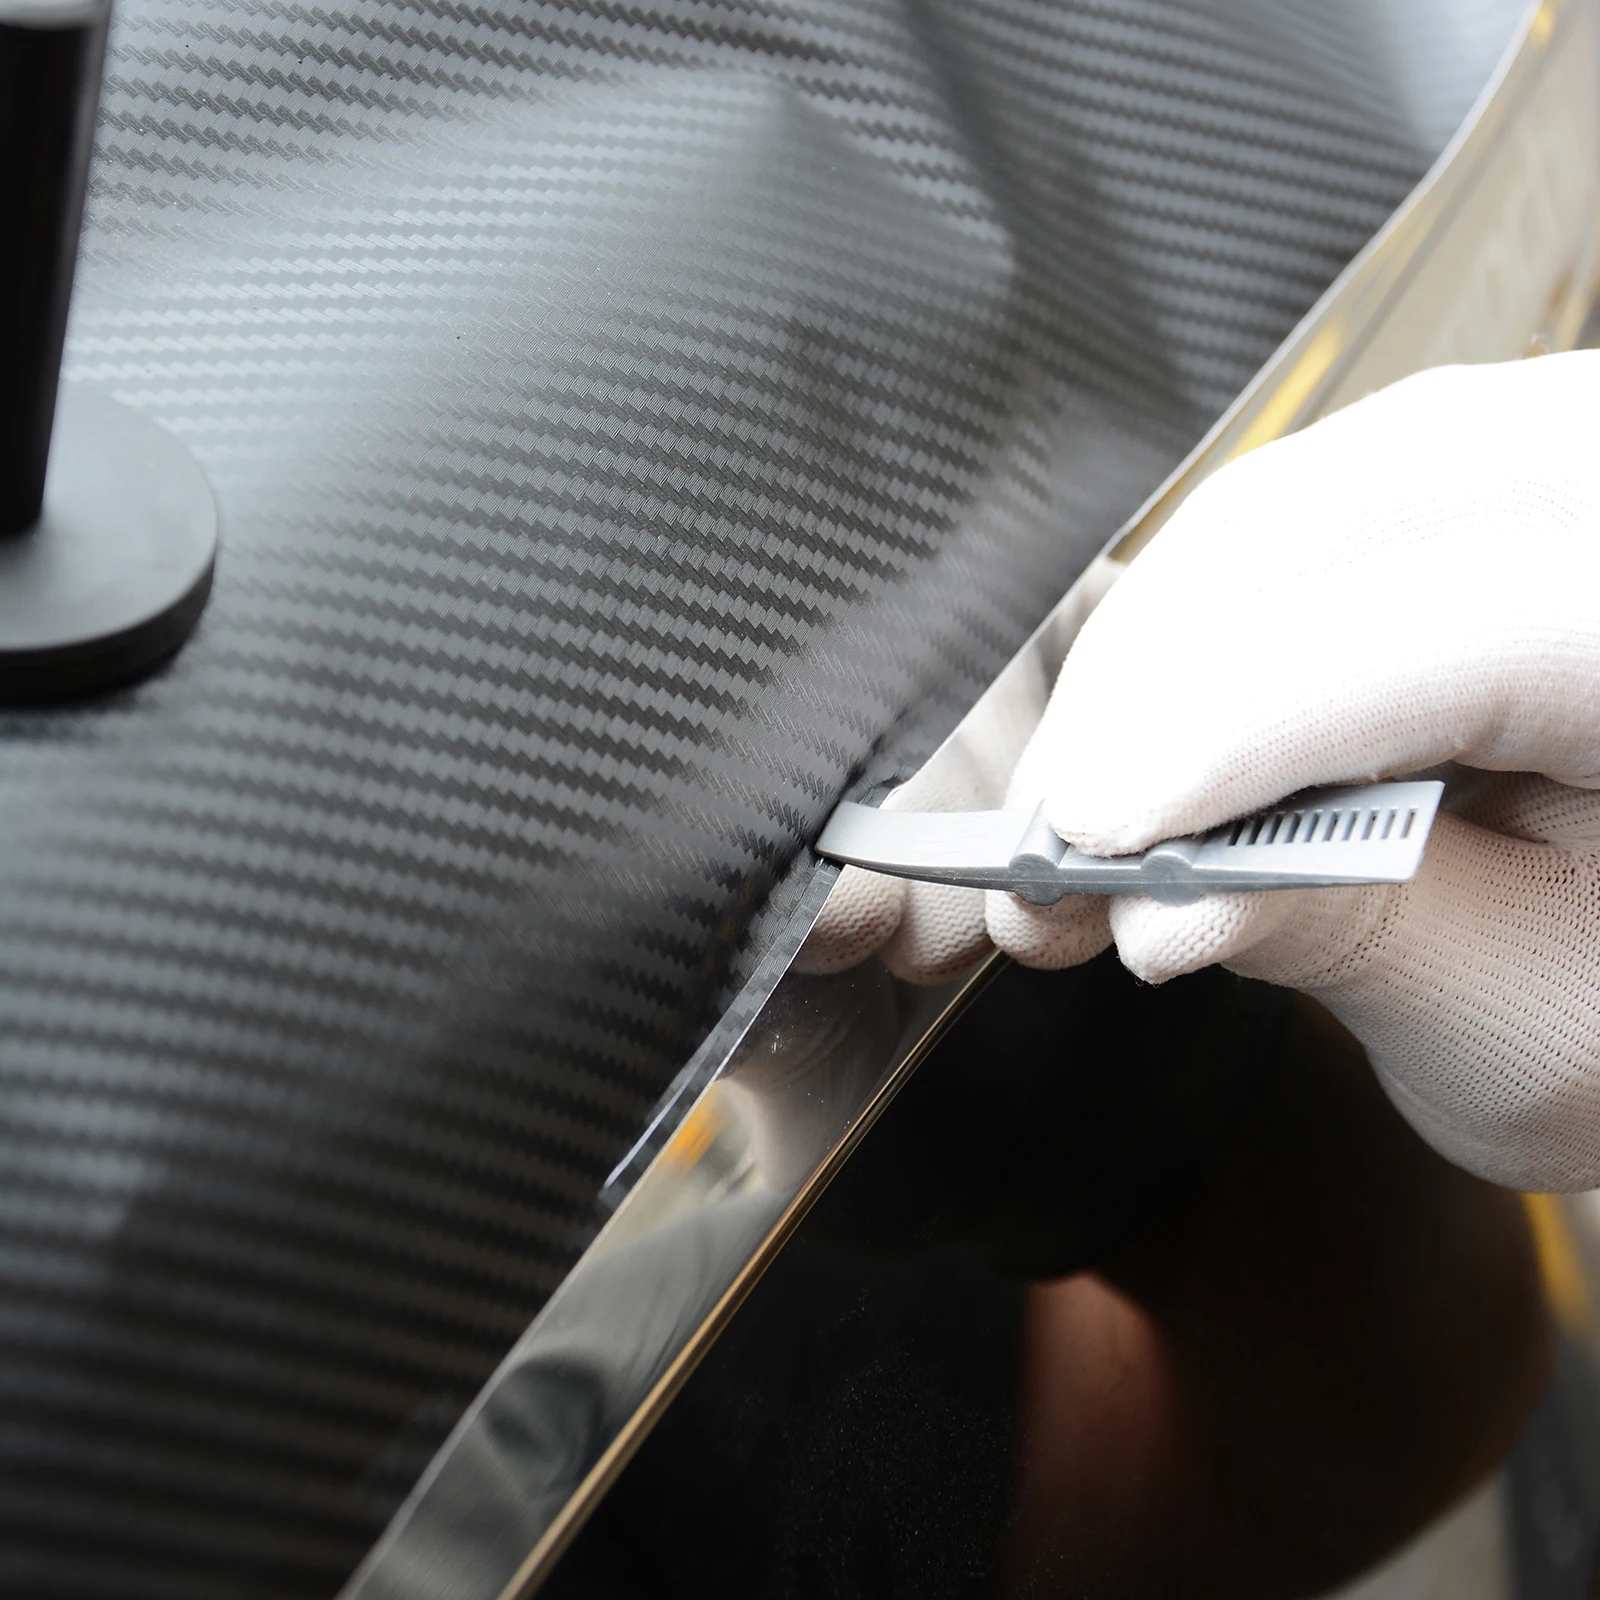 FOSHIO 3 шт. пленка из углеродистого волокна Автомобильная виниловая резиновая вставка для чистки инструмент автомобильная обмотка скребок для окна автомобиля аксессуары для автомобиля